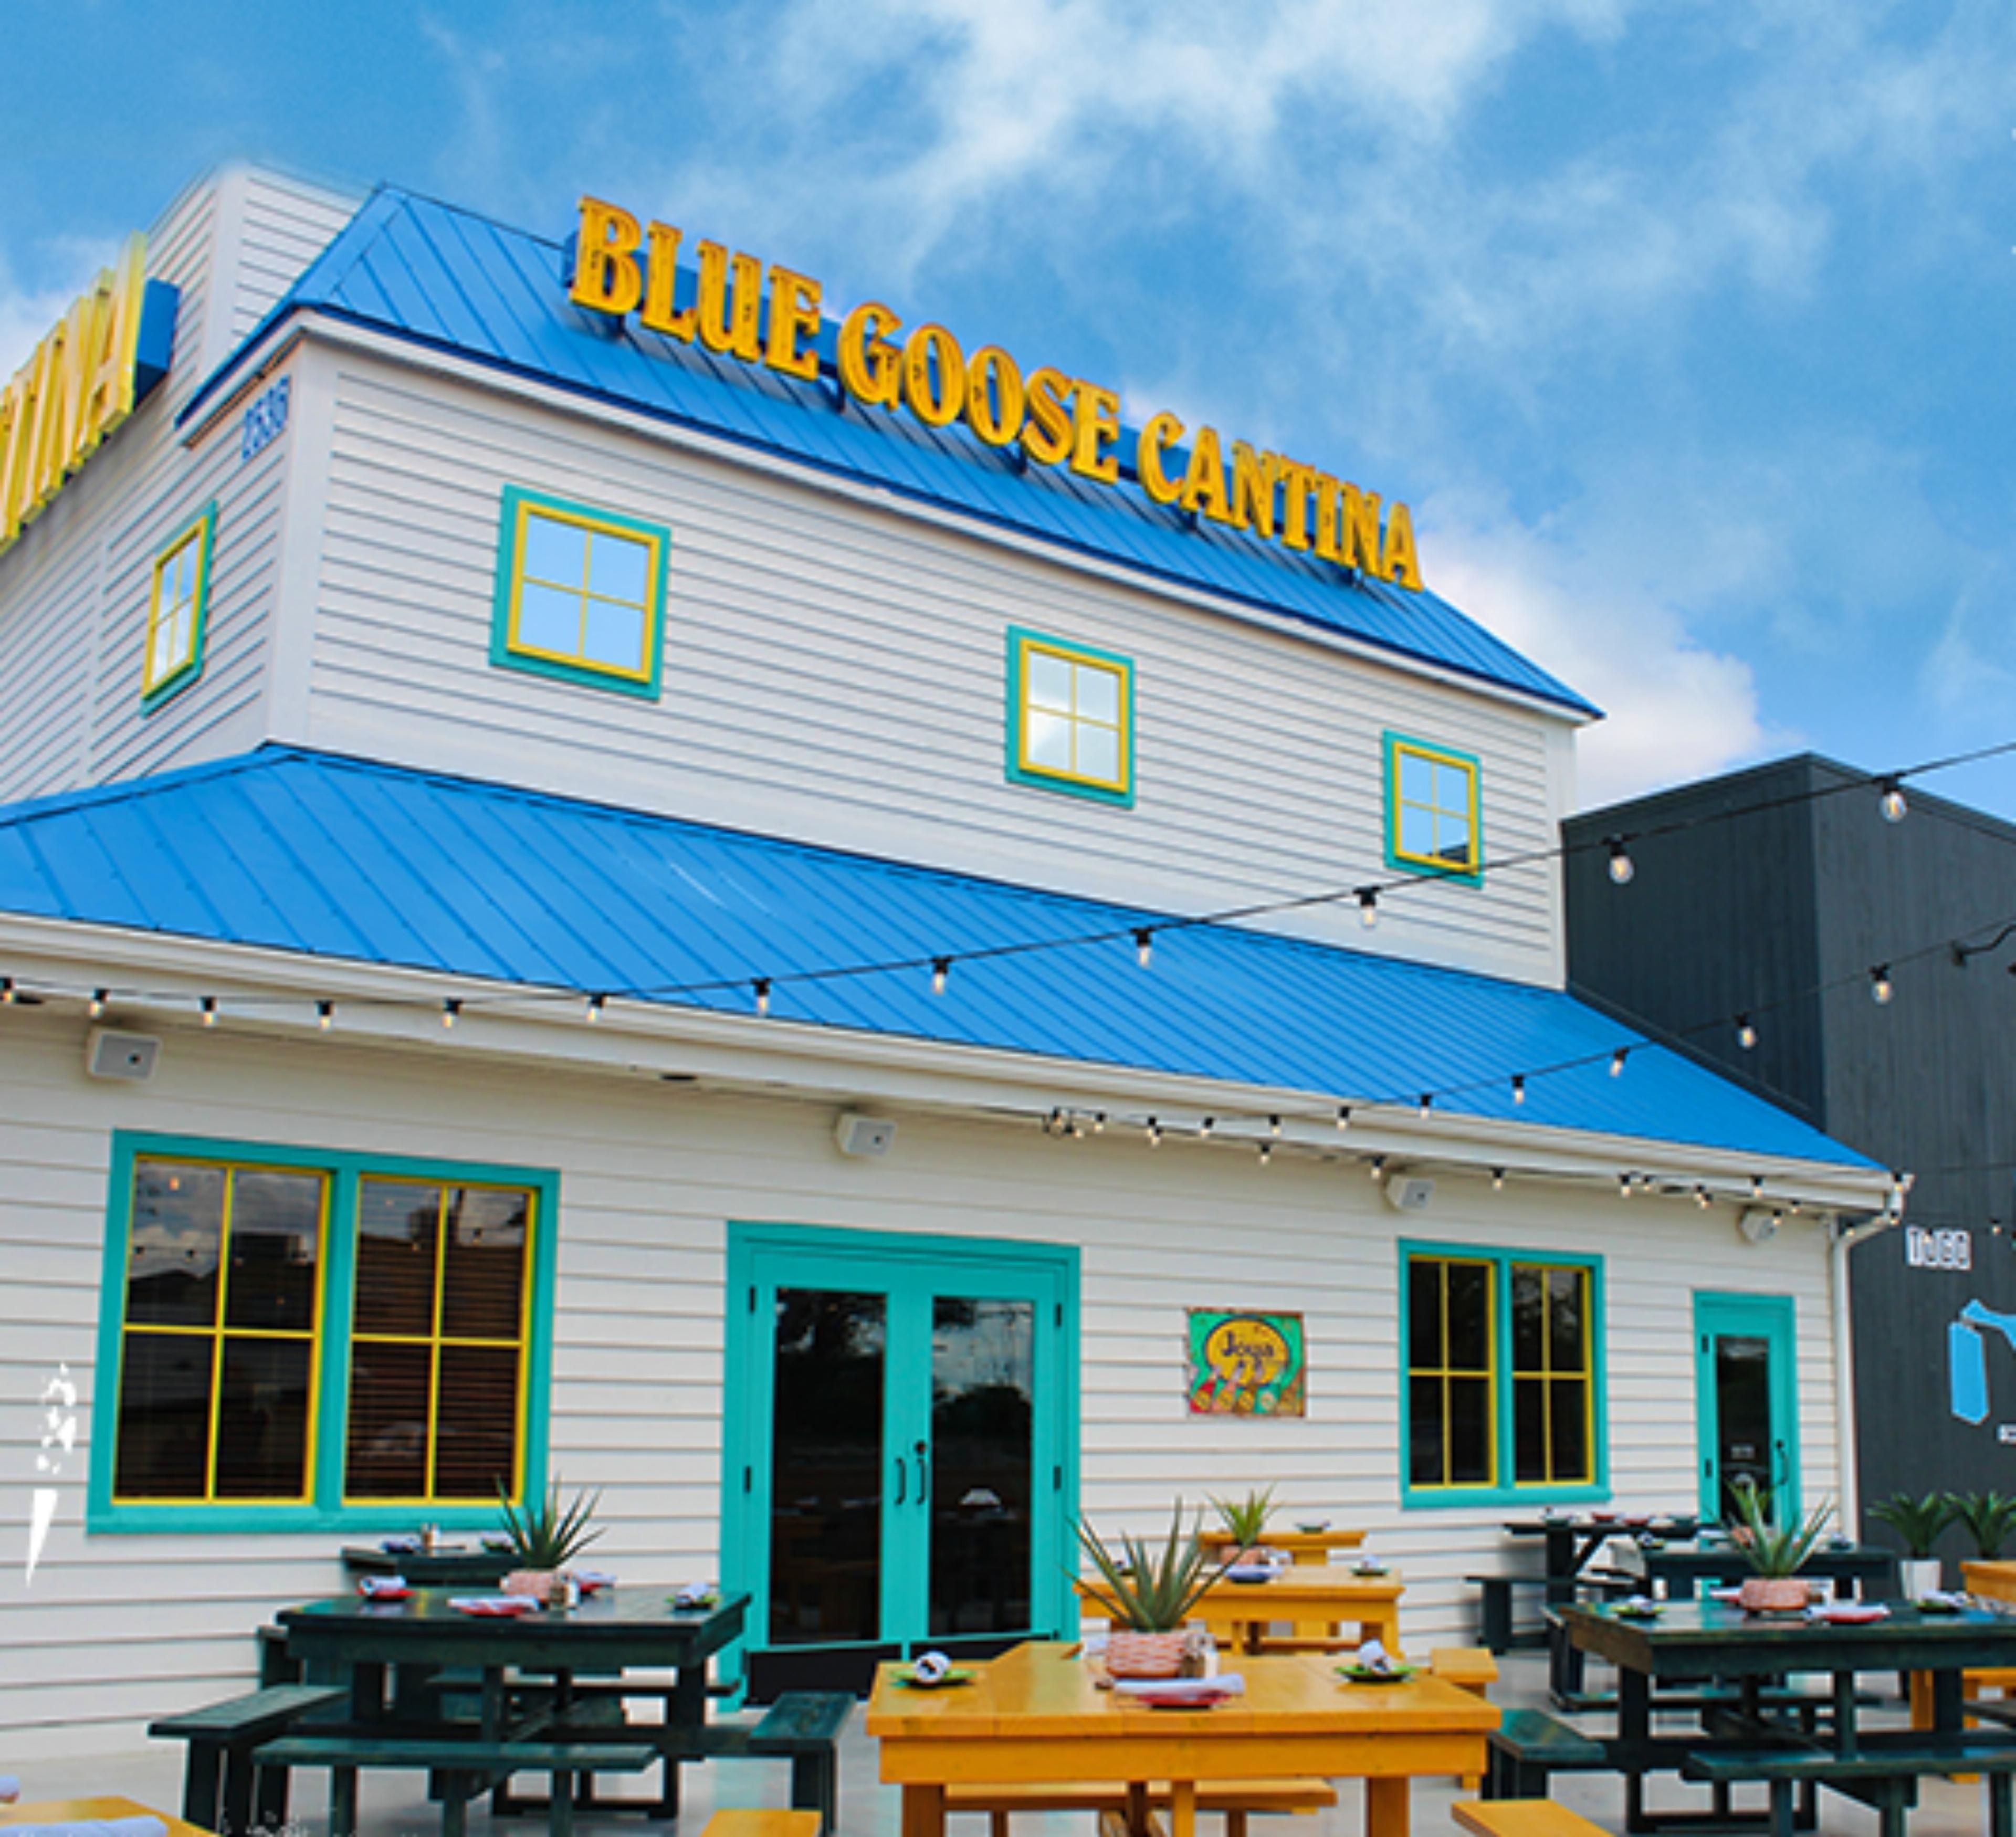 Blue Goose Cantina Mexican Restaurant - Grand Prairie